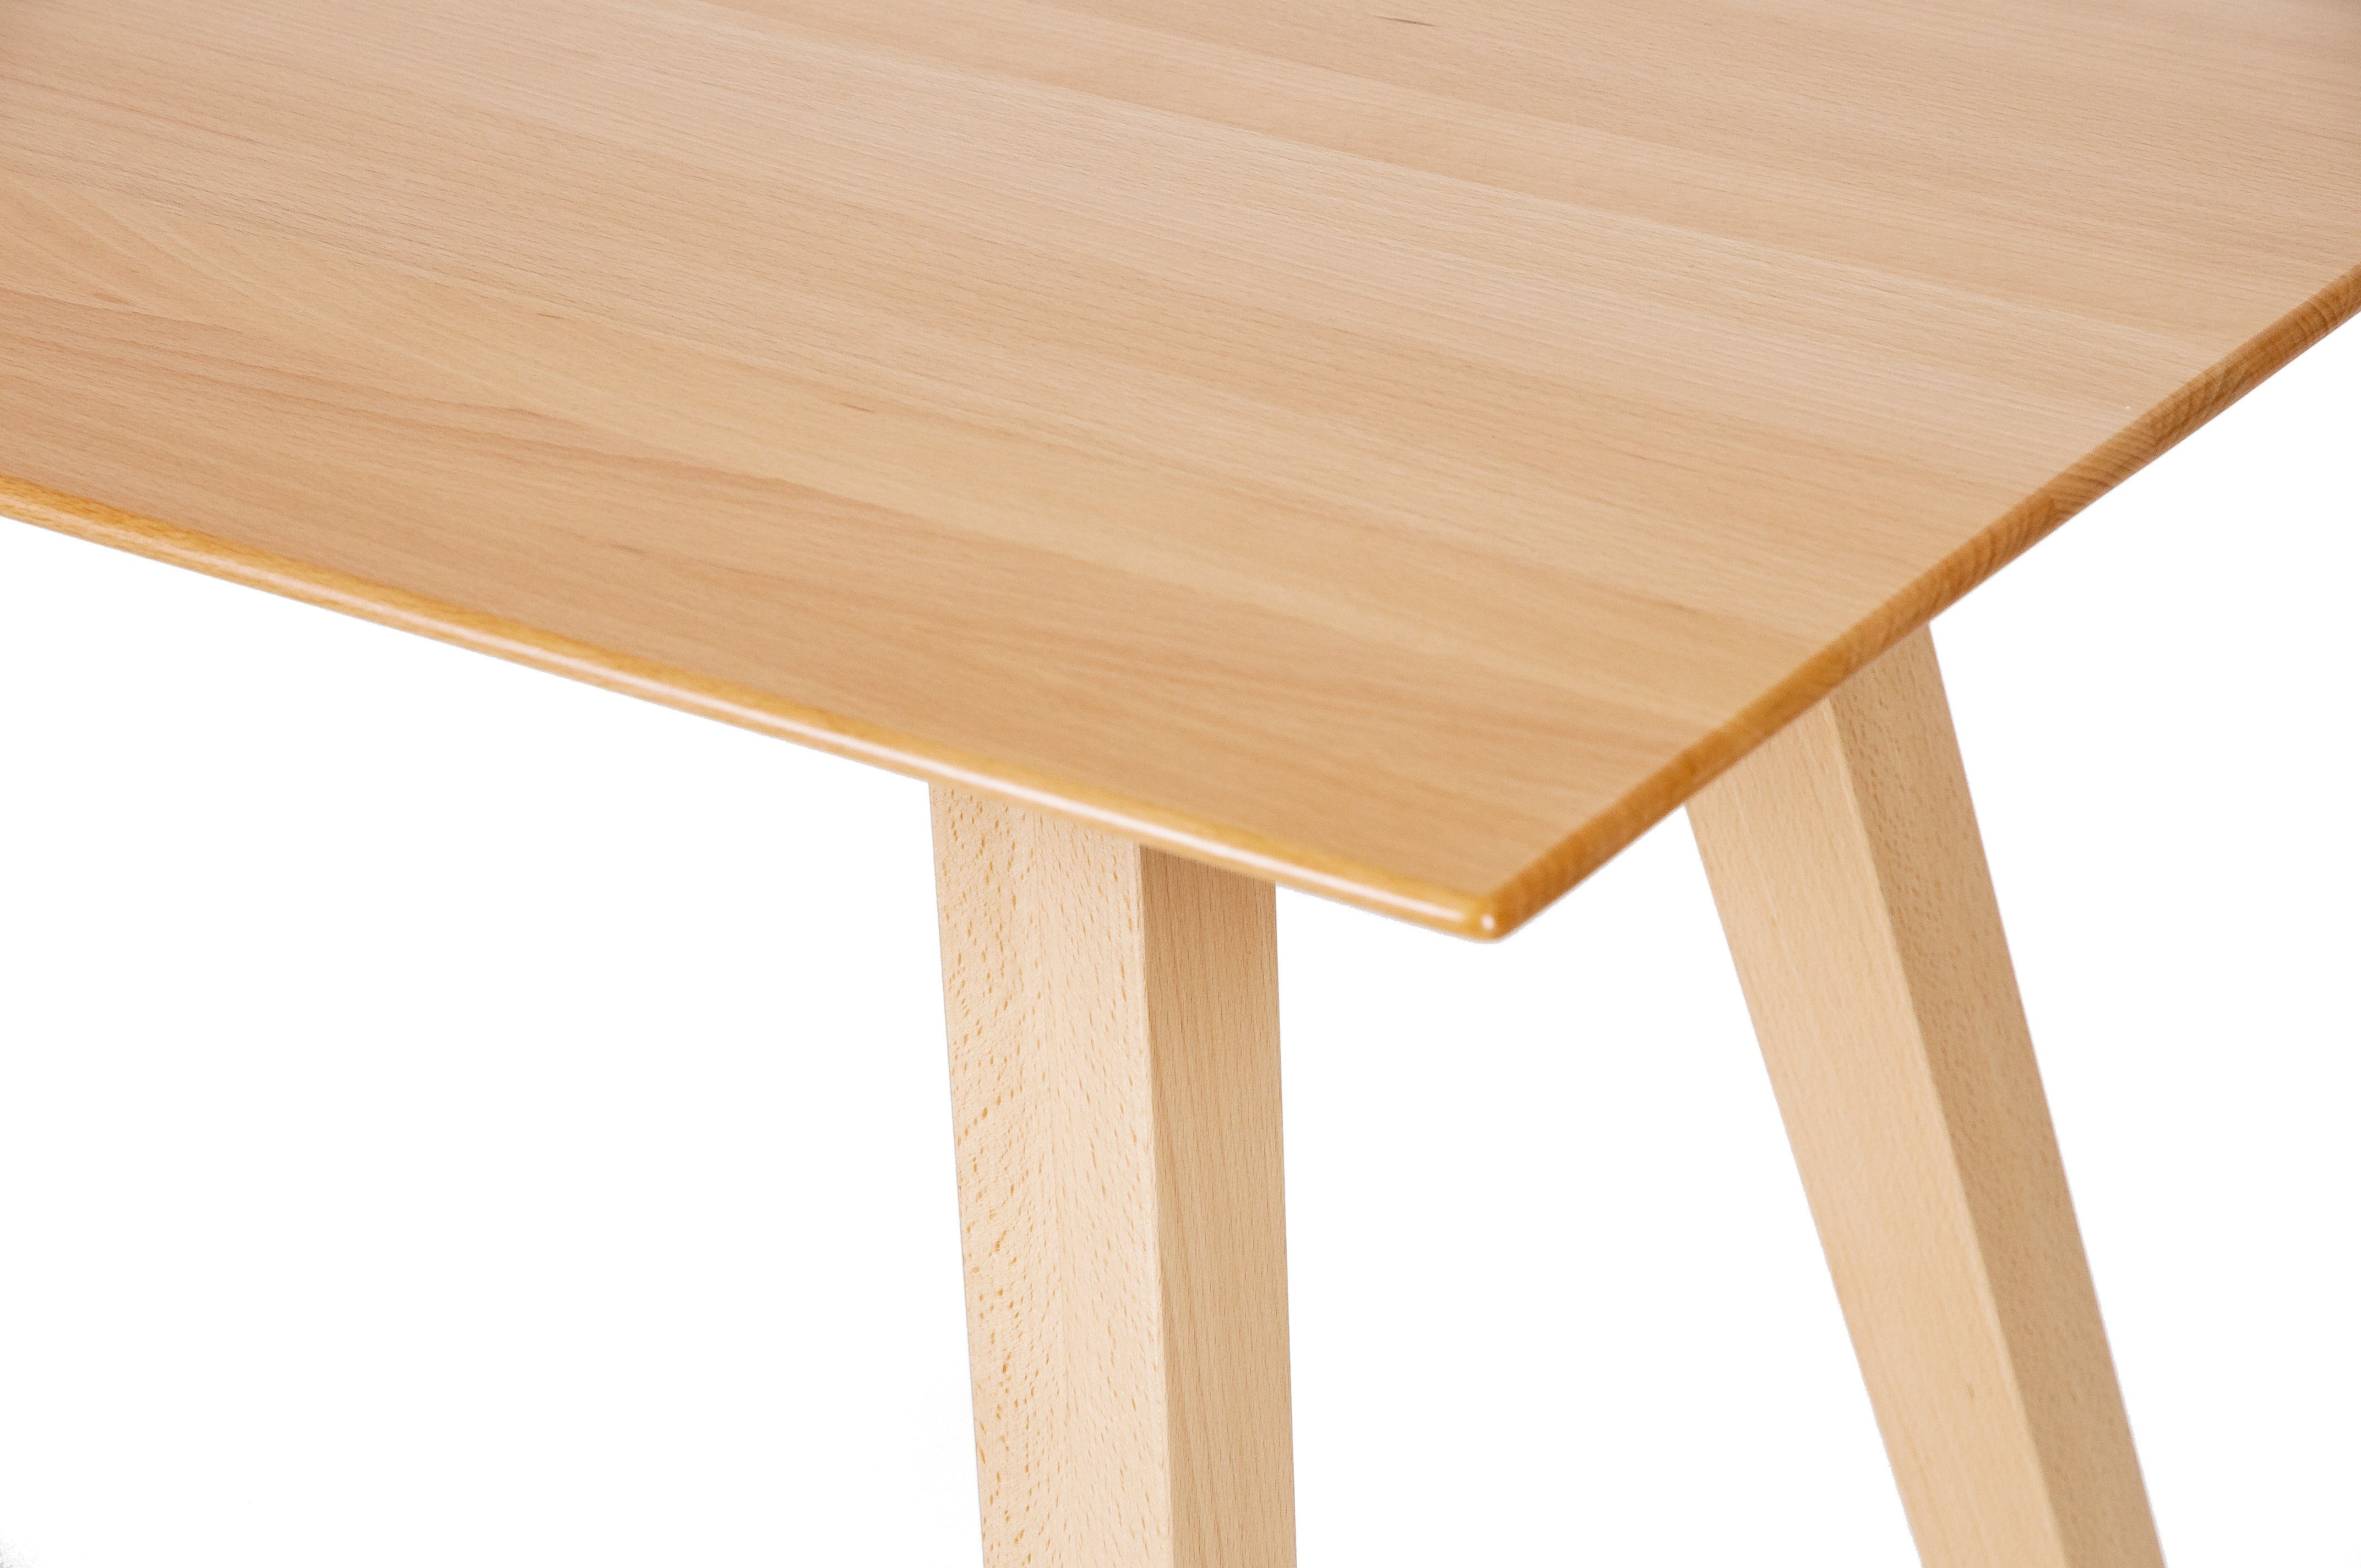 A+ Tisch in Küchentisch, Lamellen Massivholz, durchgehenden Massivholz kundler Qualität Buche Natürliche', 'Der home Tischplatte Buche mit Esstisch 110x75cm,